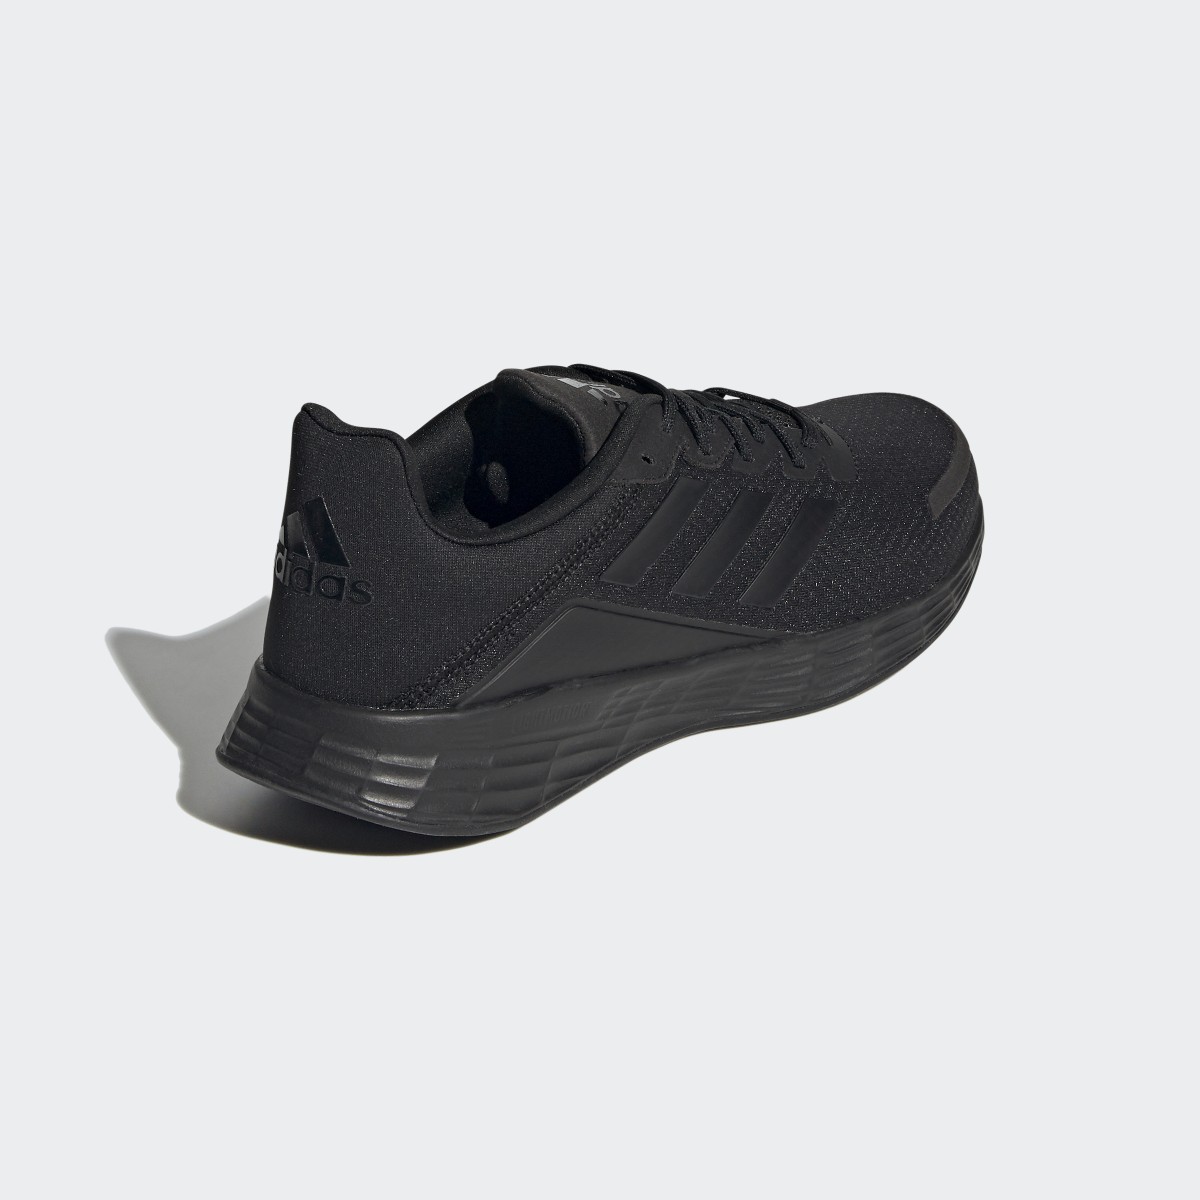 Adidas Duramo SL Running Shoes. 6